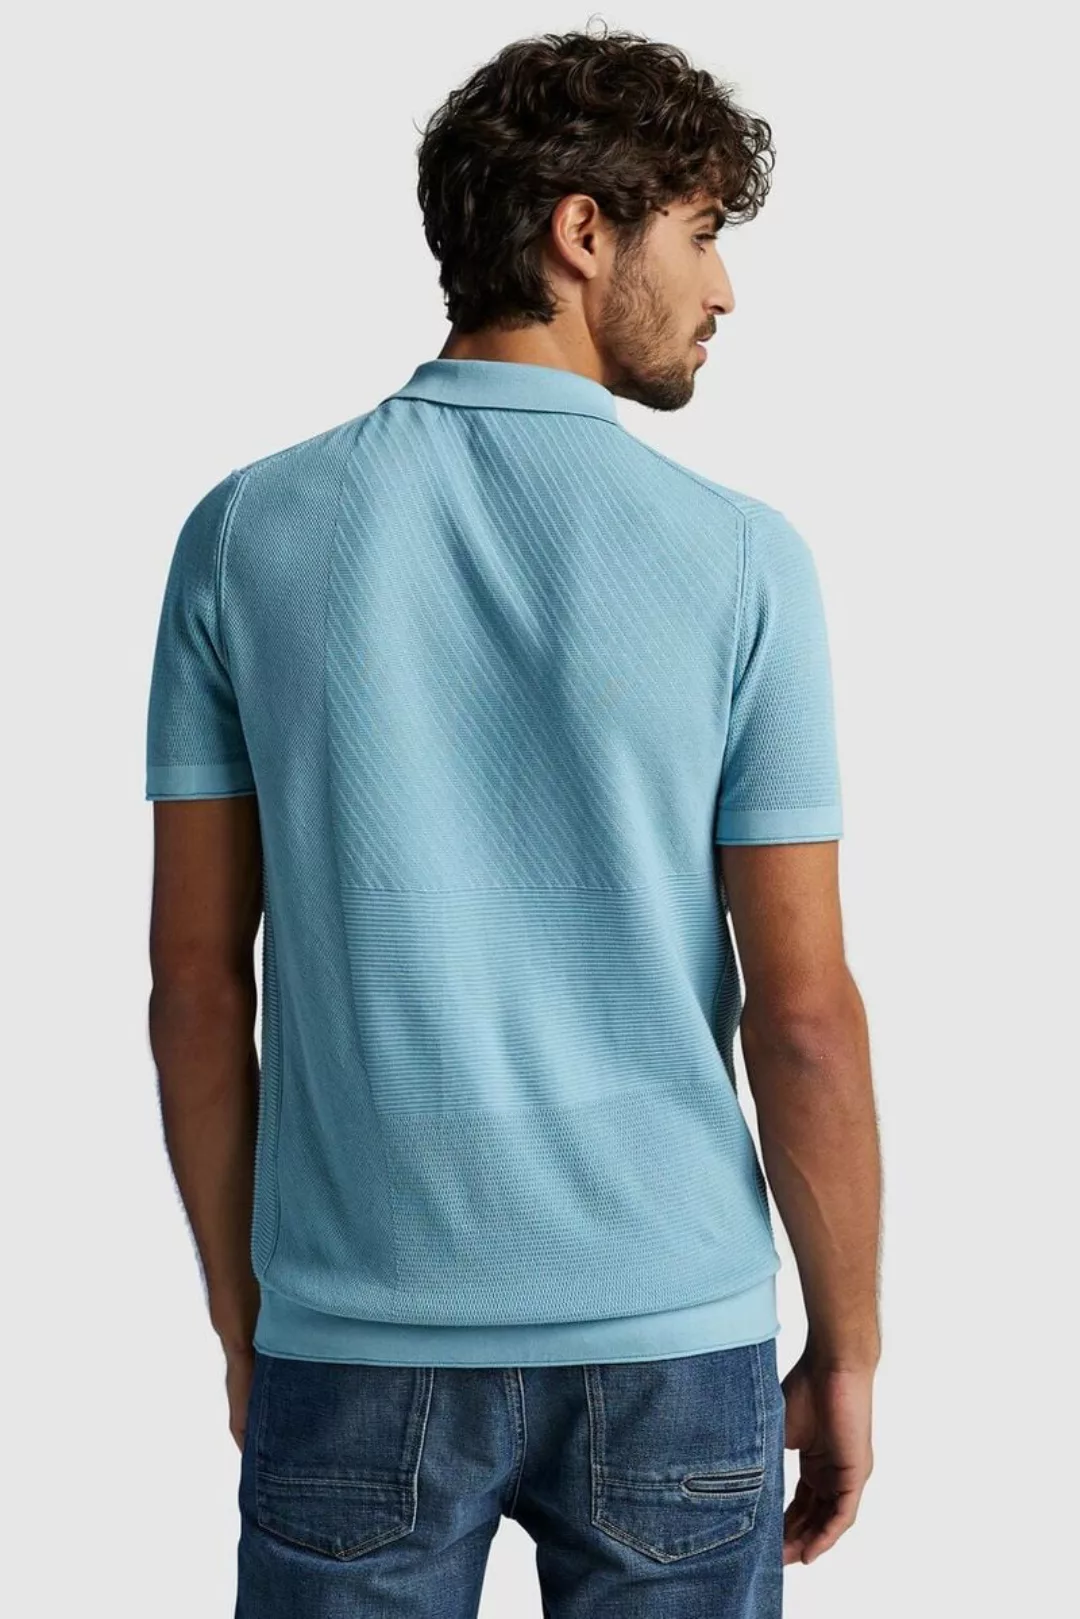 Cast Iron Poloshirt Hellblau - Größe L günstig online kaufen